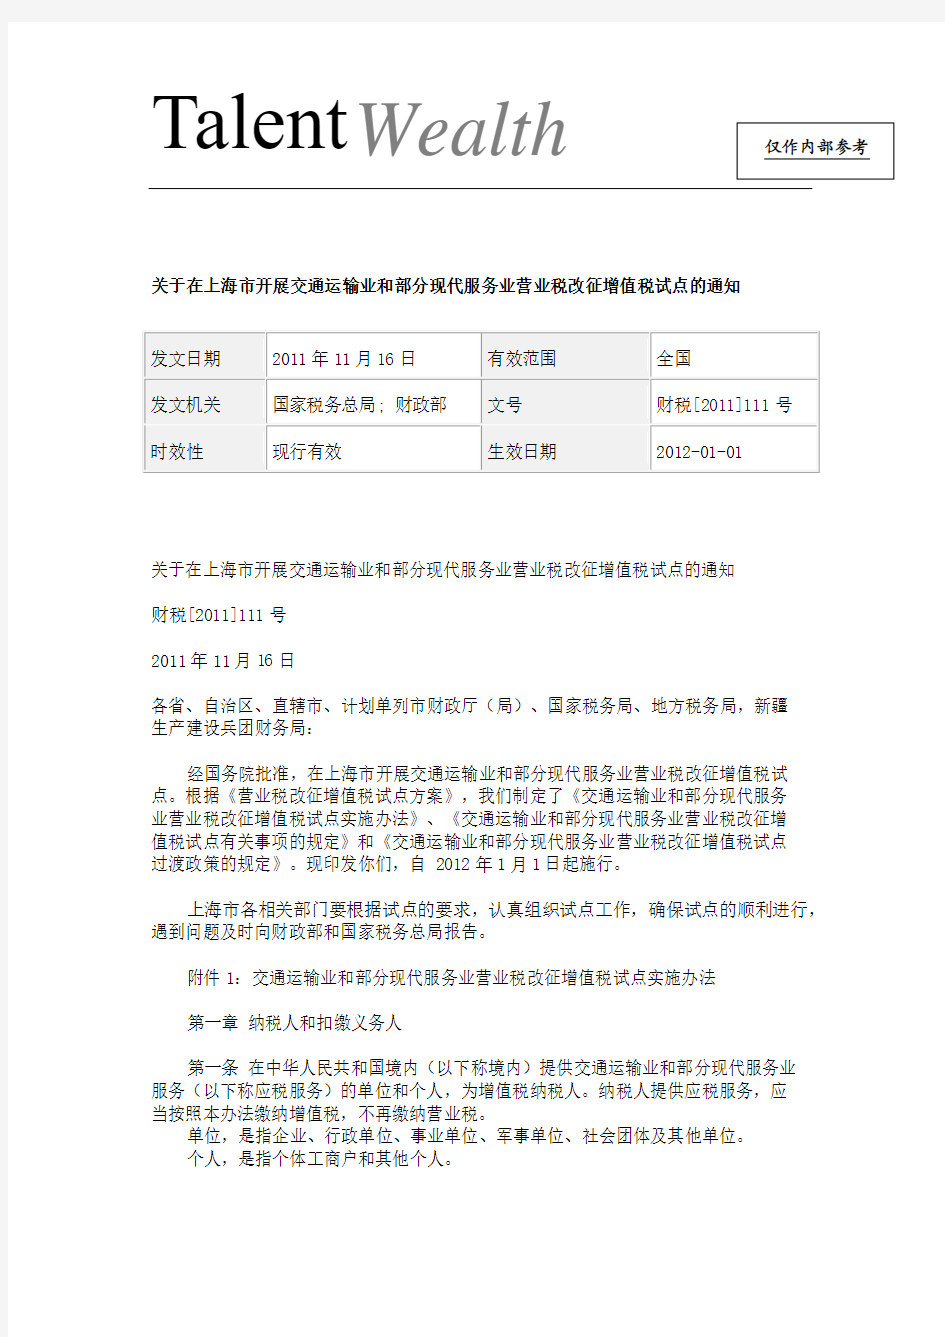 关于在上海市开展交通运输业和部分现代服务业营业税改征增值税试点的通知_财税[2011]111号